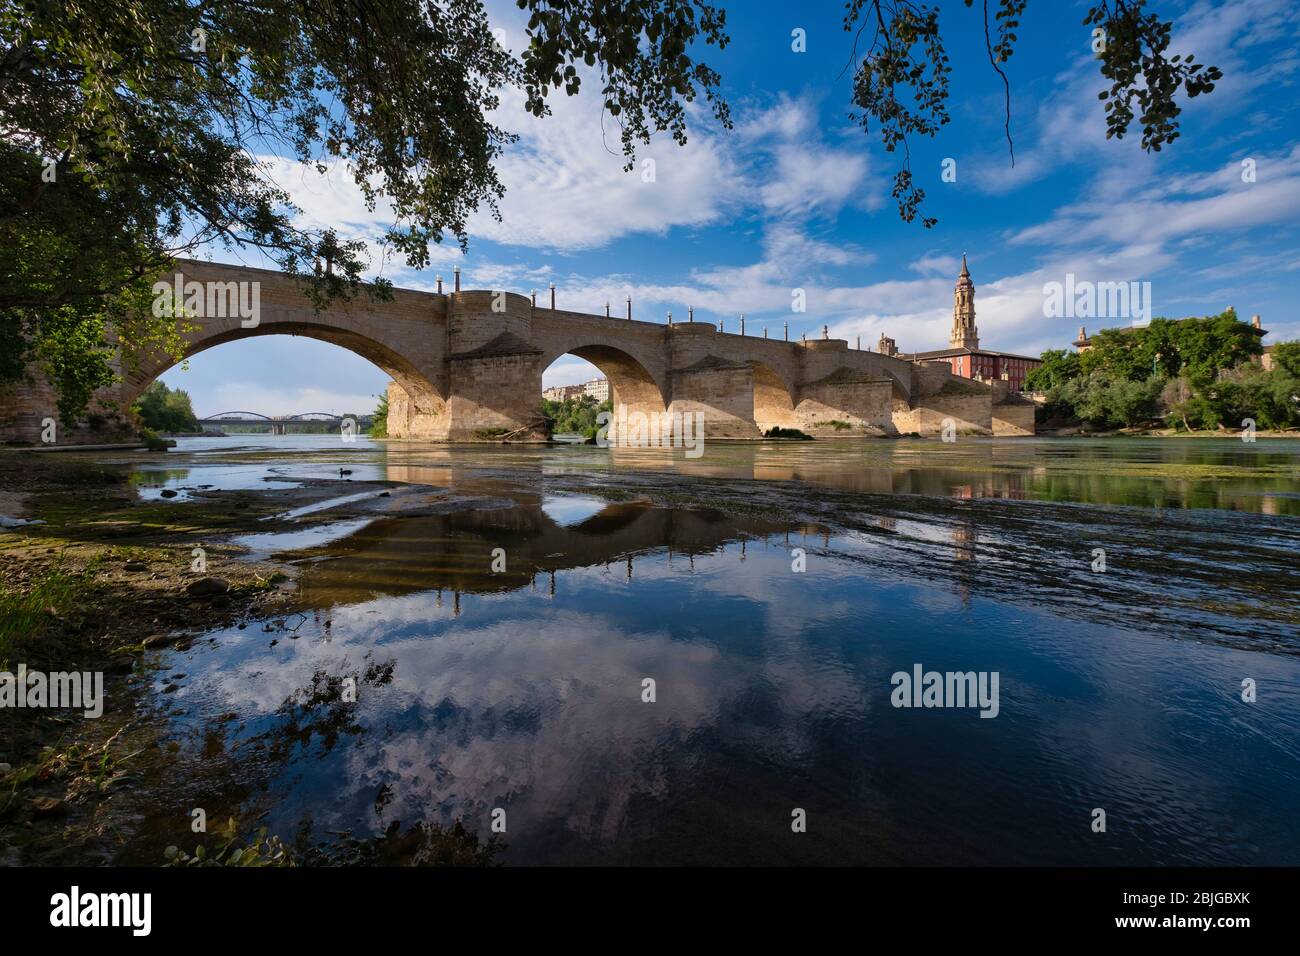 Antico ponte in pietra sul fiume Ebro con la torre della chiesa della Cattedrale di la Seo, nota come Catedral del Salvador sullo sfondo, Saragozza, Spagna Foto Stock